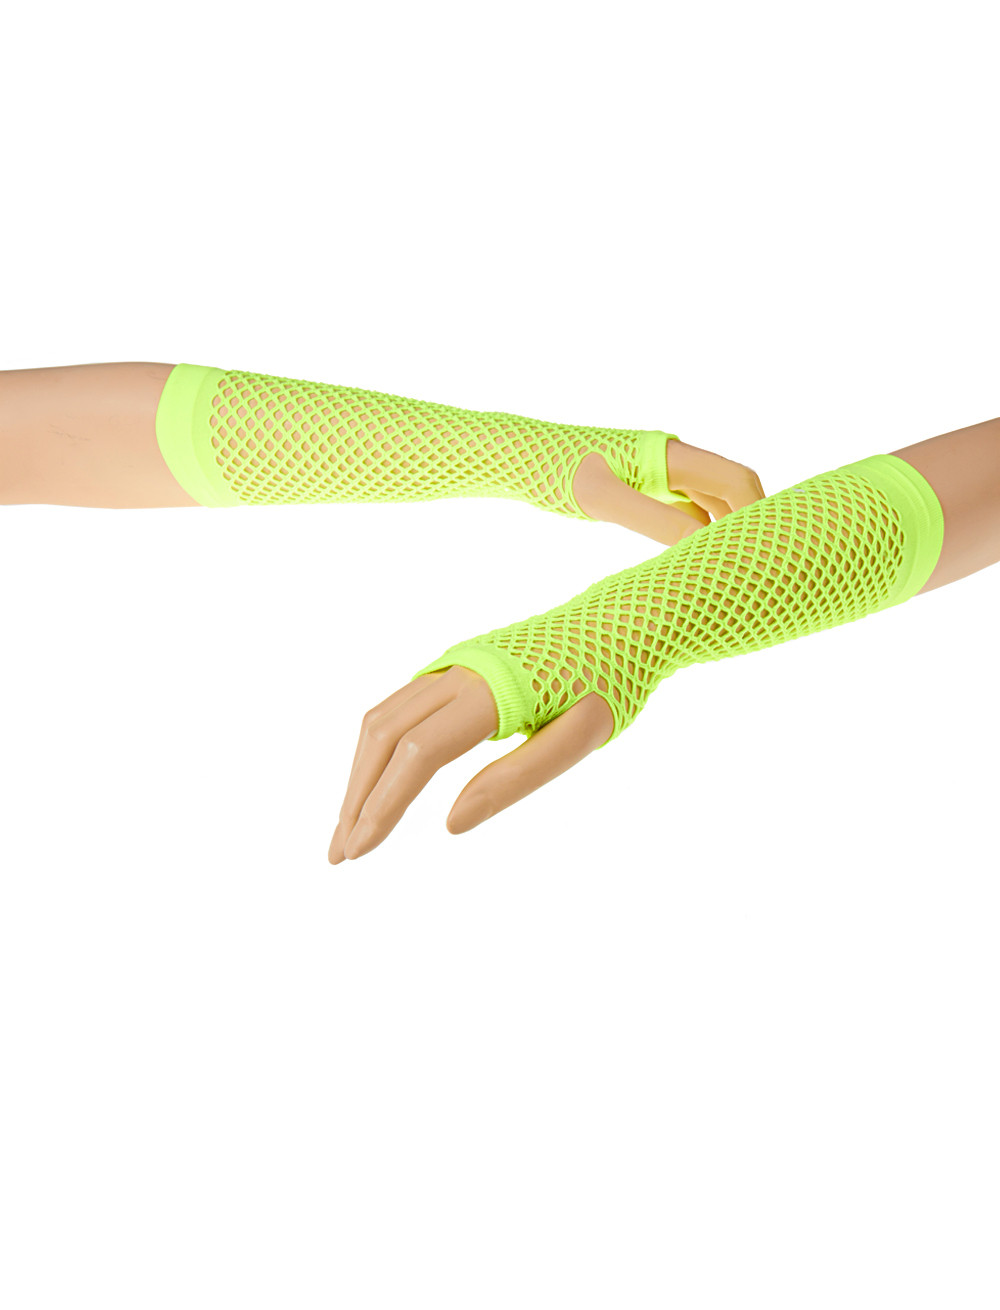 Net gloves, fingerless, short neon green